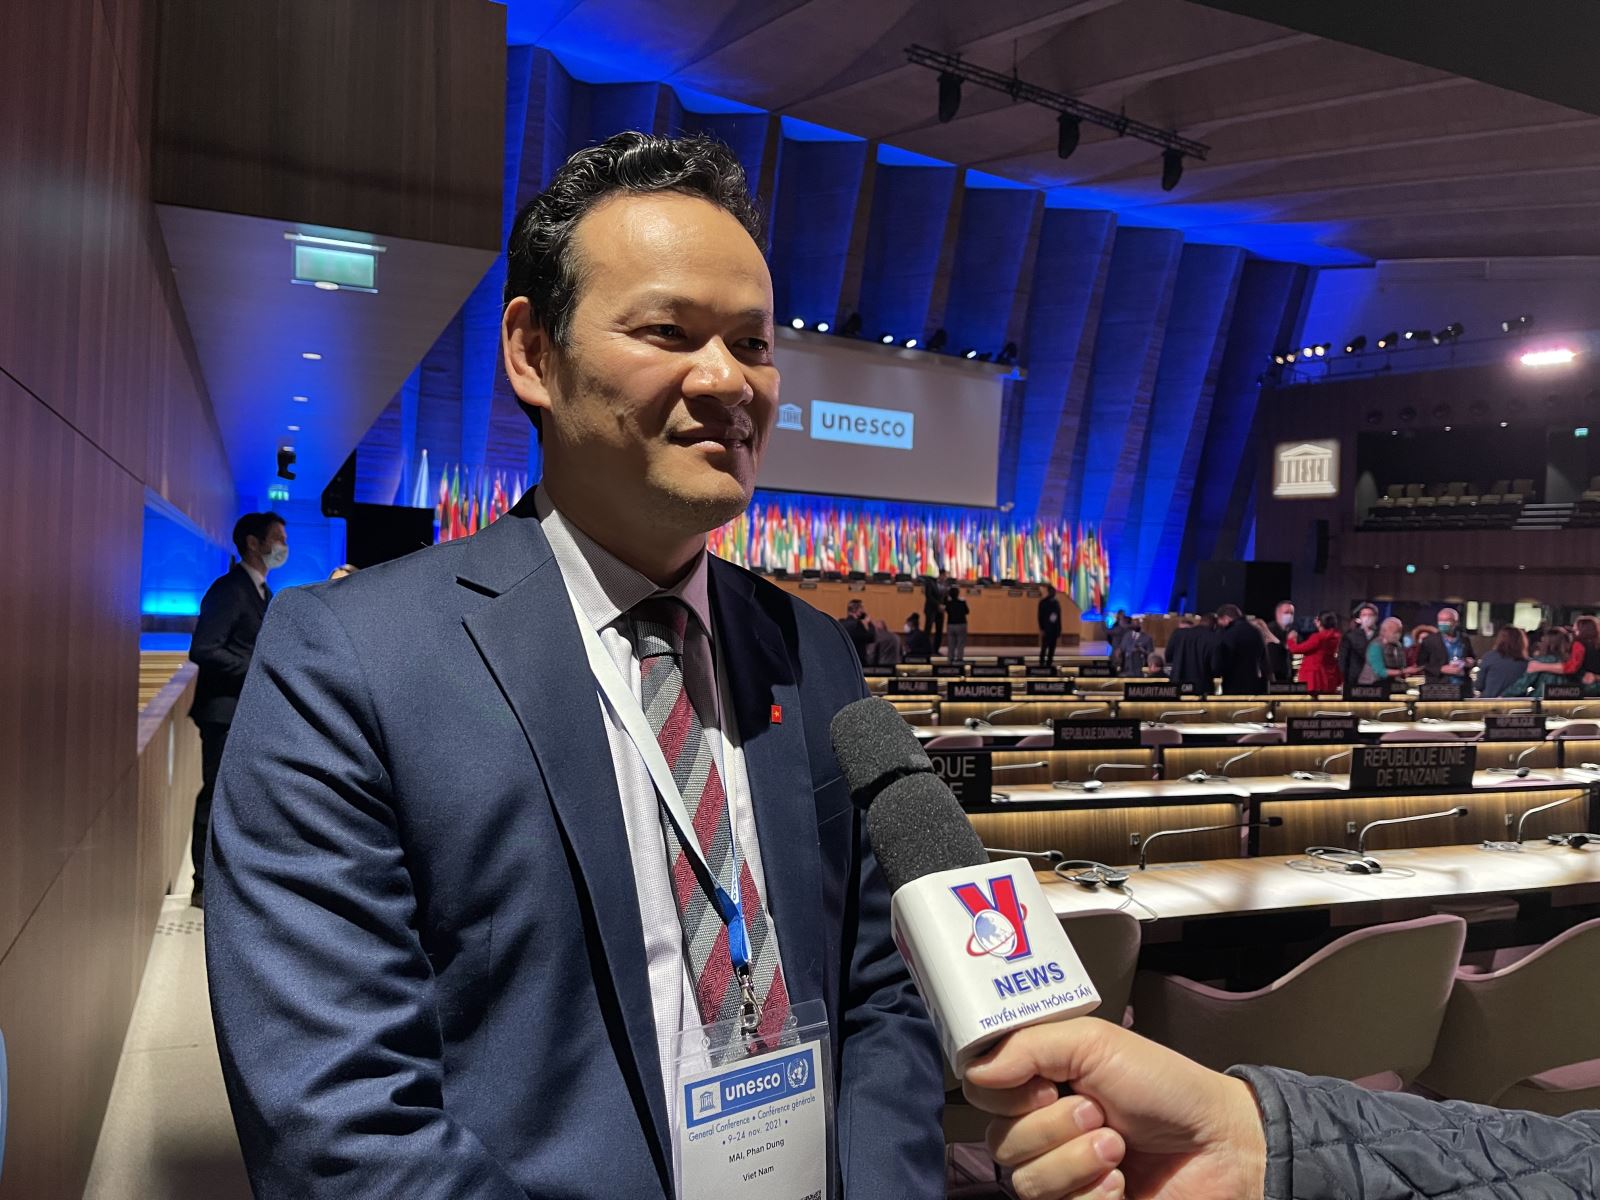 Ông Mai Phan Dũng, Tổng thư ký Ủy ban quốc gia UNESCO Việt Nam, Vụ trưởng vụ Ngoại giao Văn hóa và UNESCO, thuộc Bộ Ngoại giao, đồng thời là Trưởng phái đoàn Việt Nam tham dự Đại hội đồng UNESCO lần thứ 41, trả lời phỏng vấn TTXVN về kết quả phiên họp. Ảnh: Thu Hà/P/v TTXVN tại Pháp